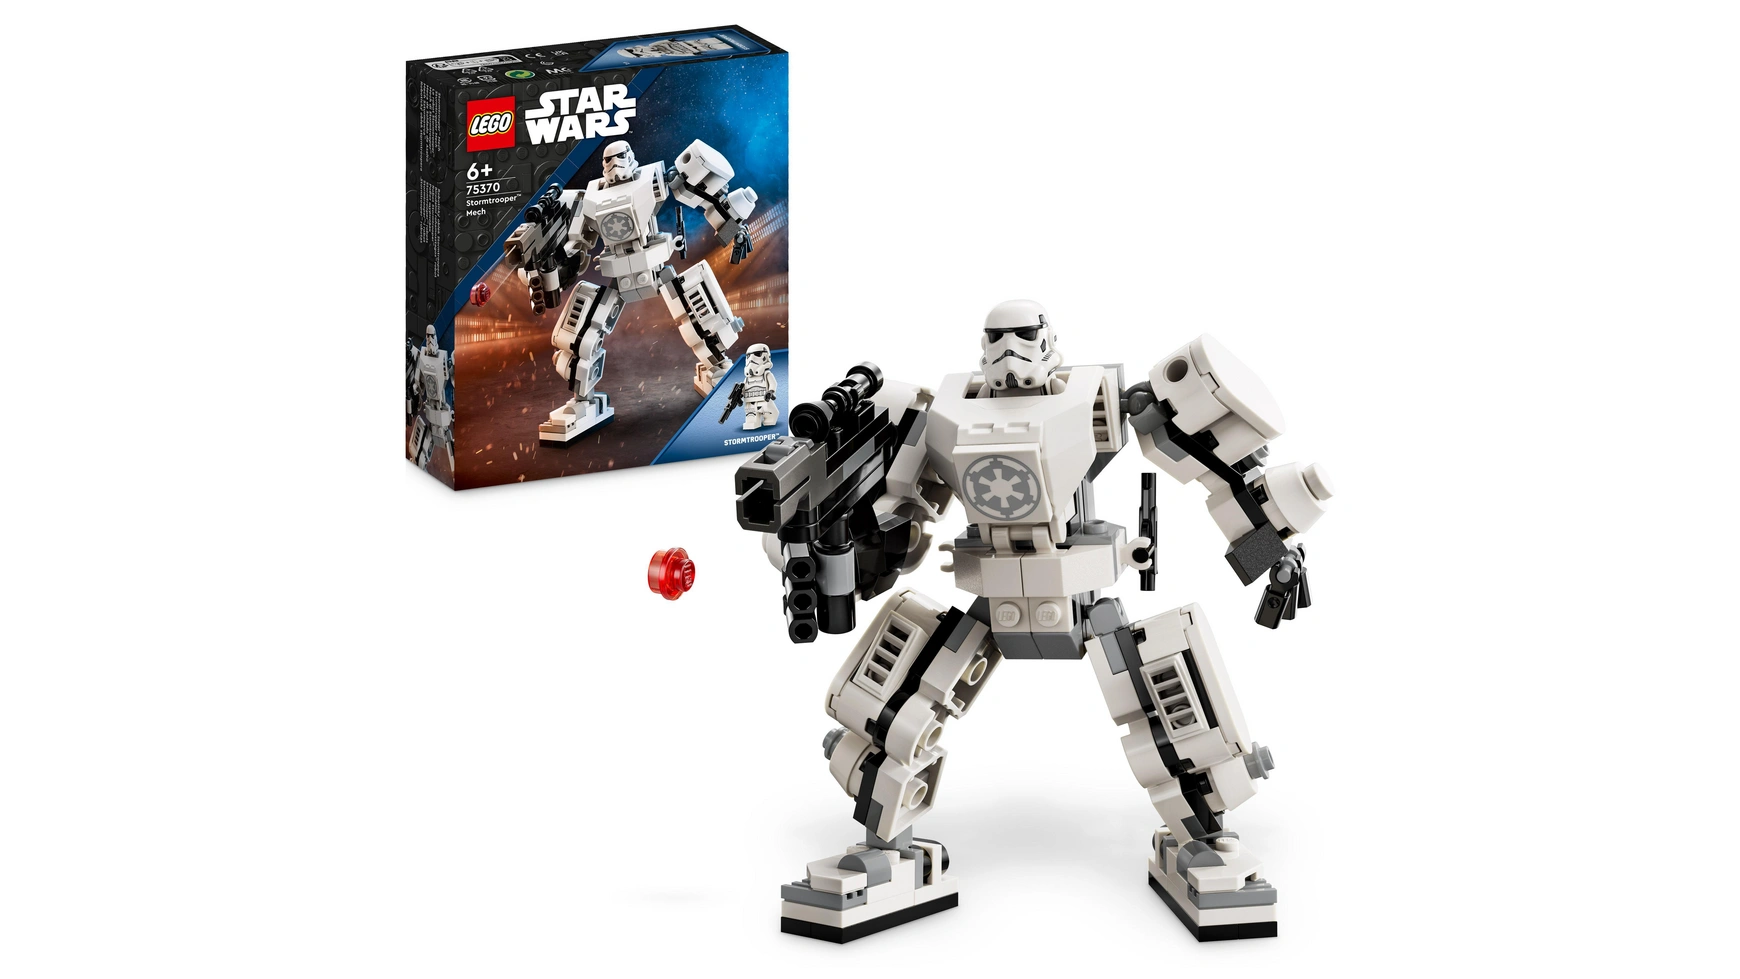 Lego Star Wars Набор роботов-штурмовиков, фигурка, которую нужно собрать брелок lego star wars штурмовик металл гладкая фактура черный